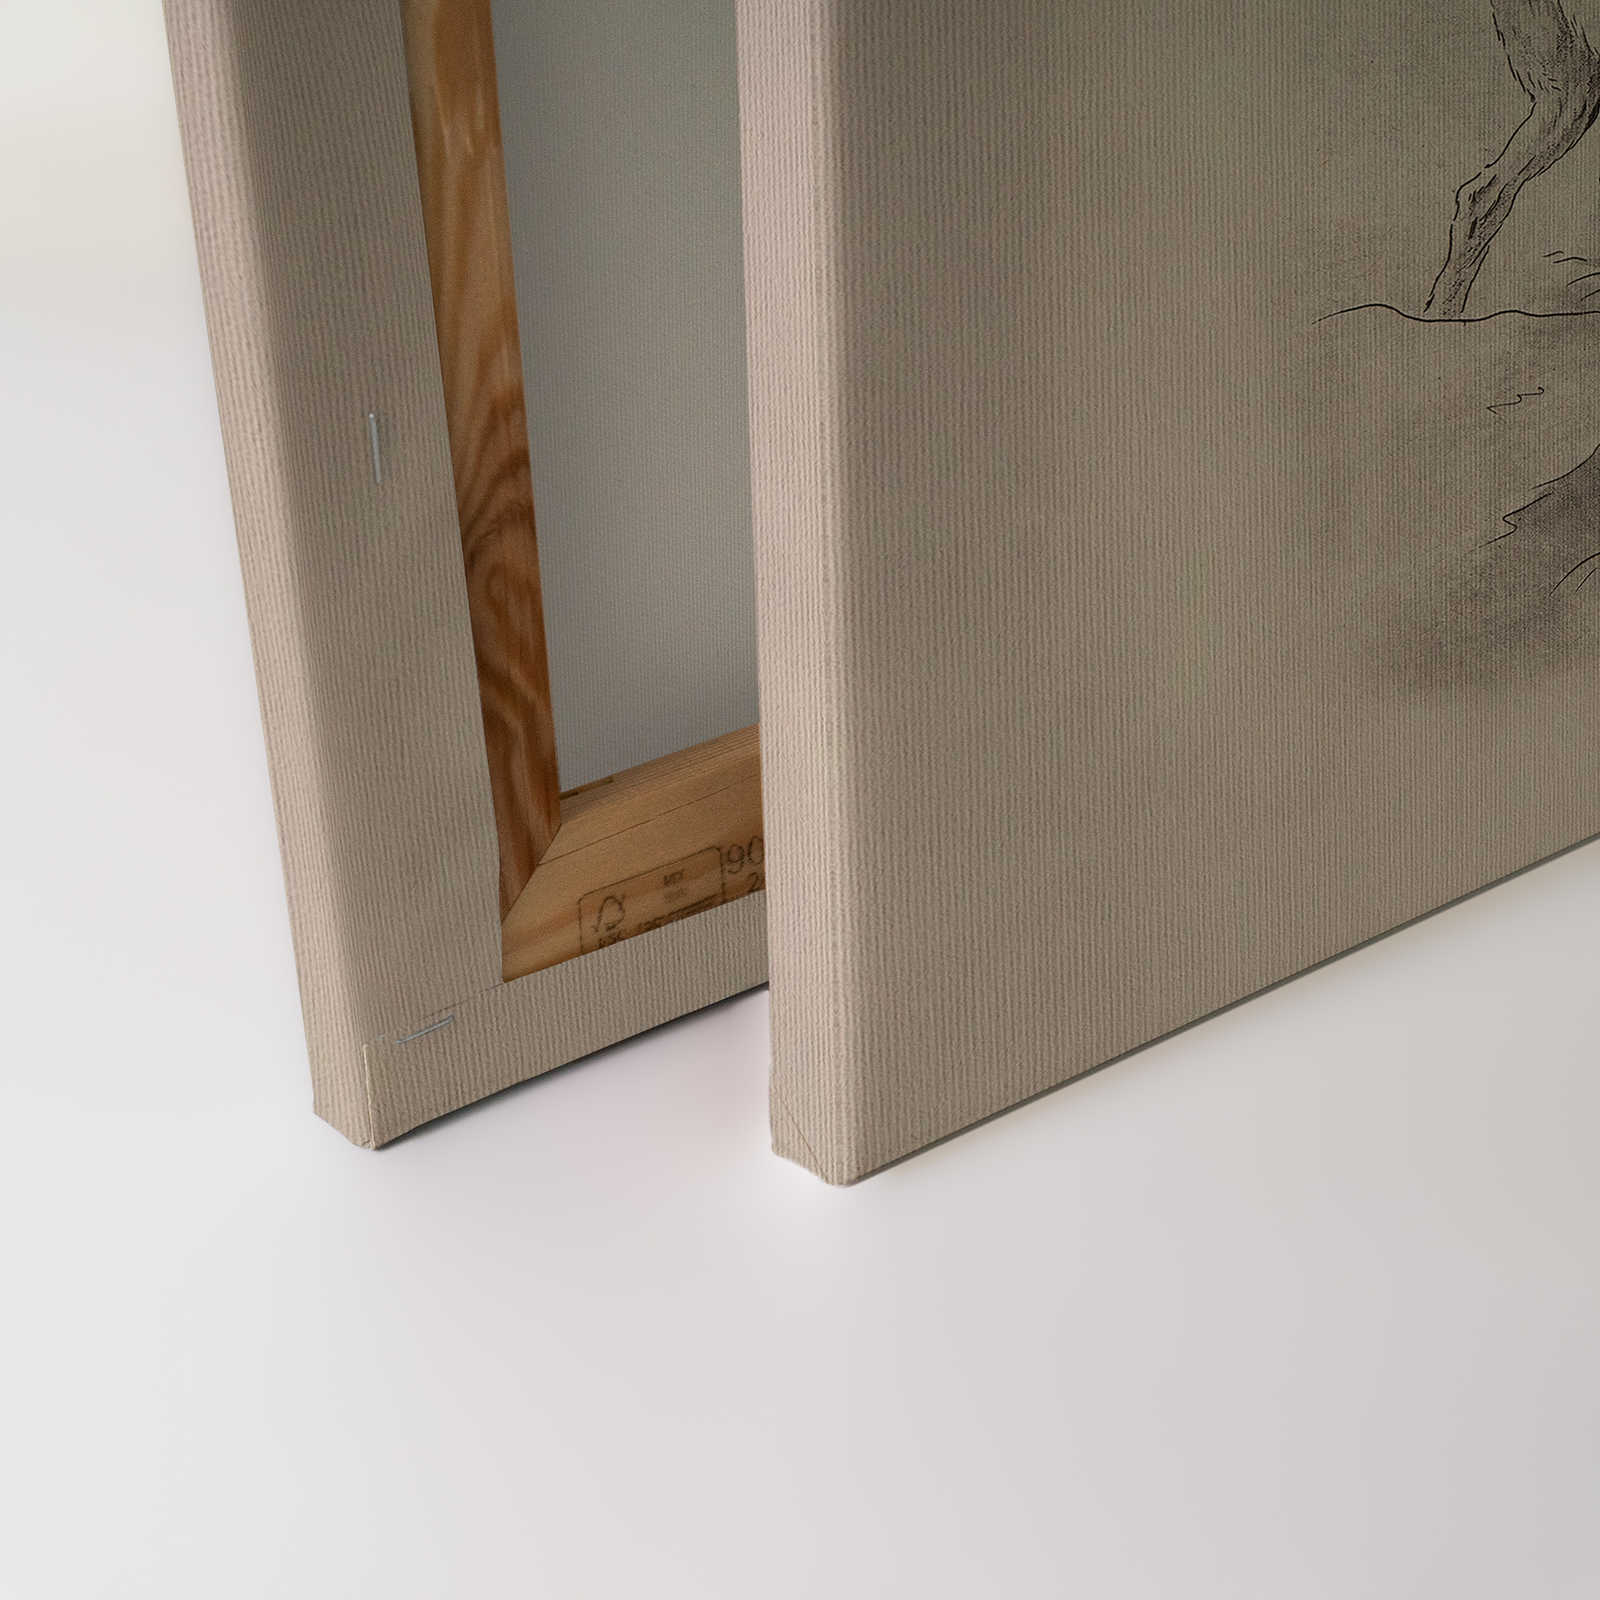             Sull'erba 1 - Quadro su tela Cervo e Cervo Disegno vintage in beige - 1,20 m x 0,80 m
        